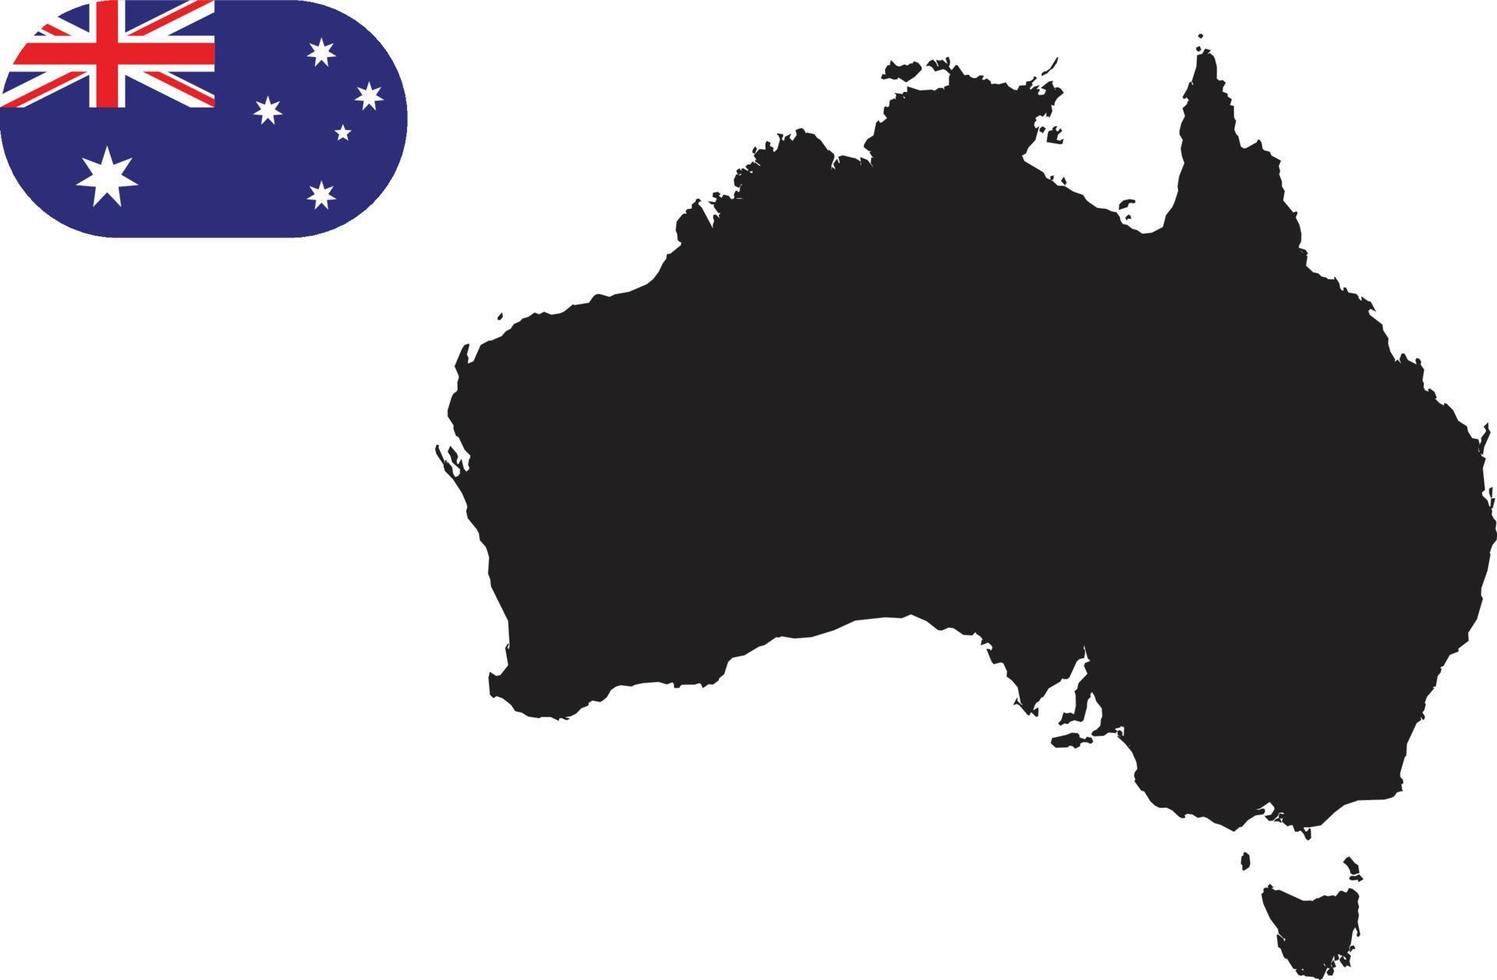 Karte und Flagge von Australien vektor